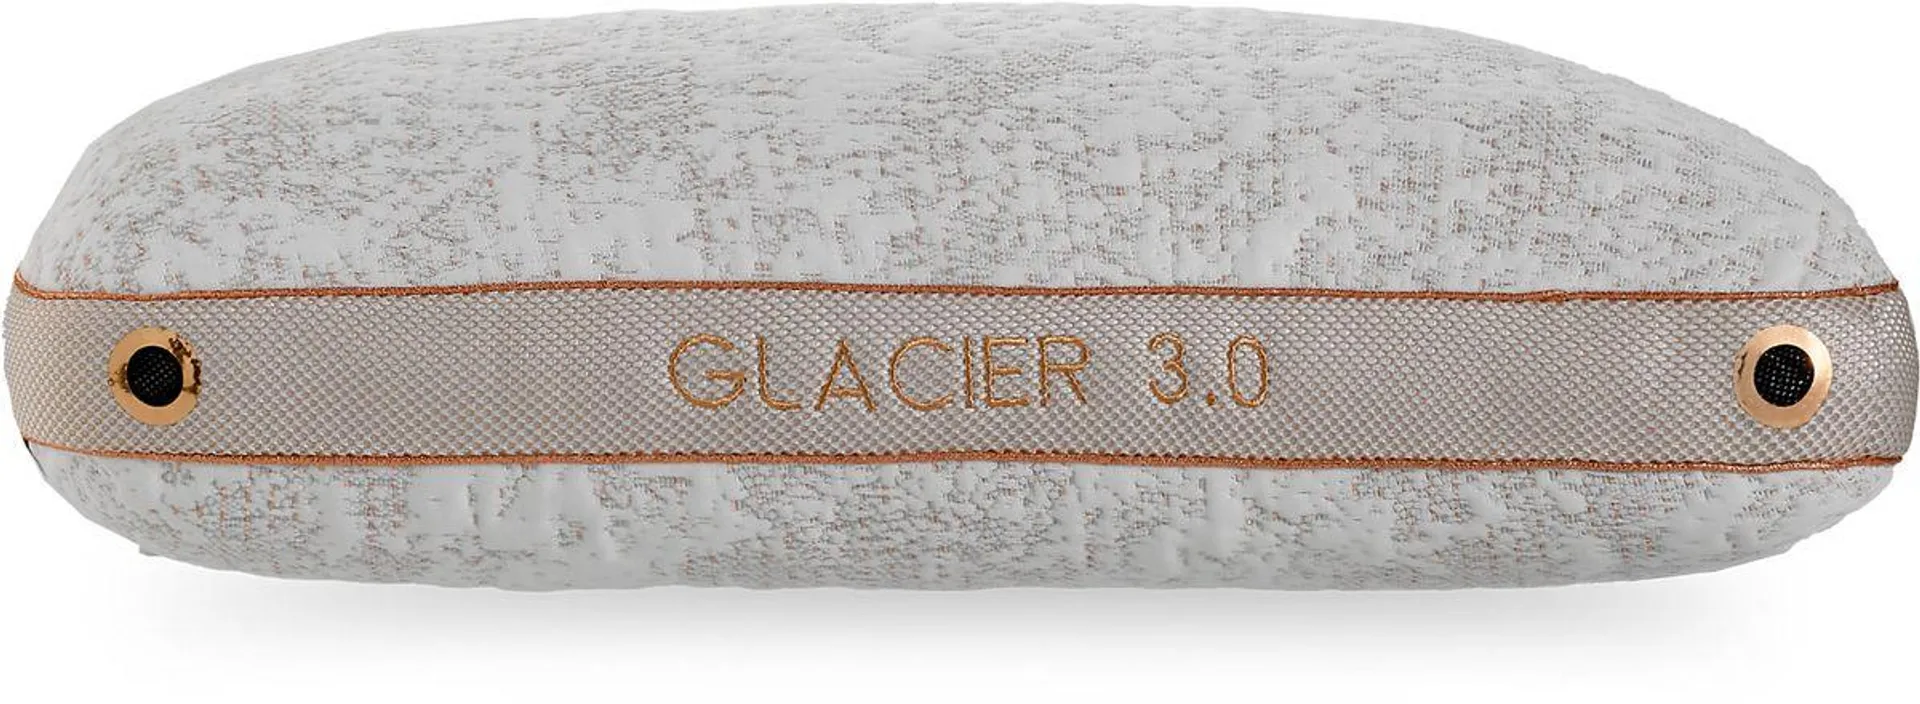 Bedgear Glacier Pillow